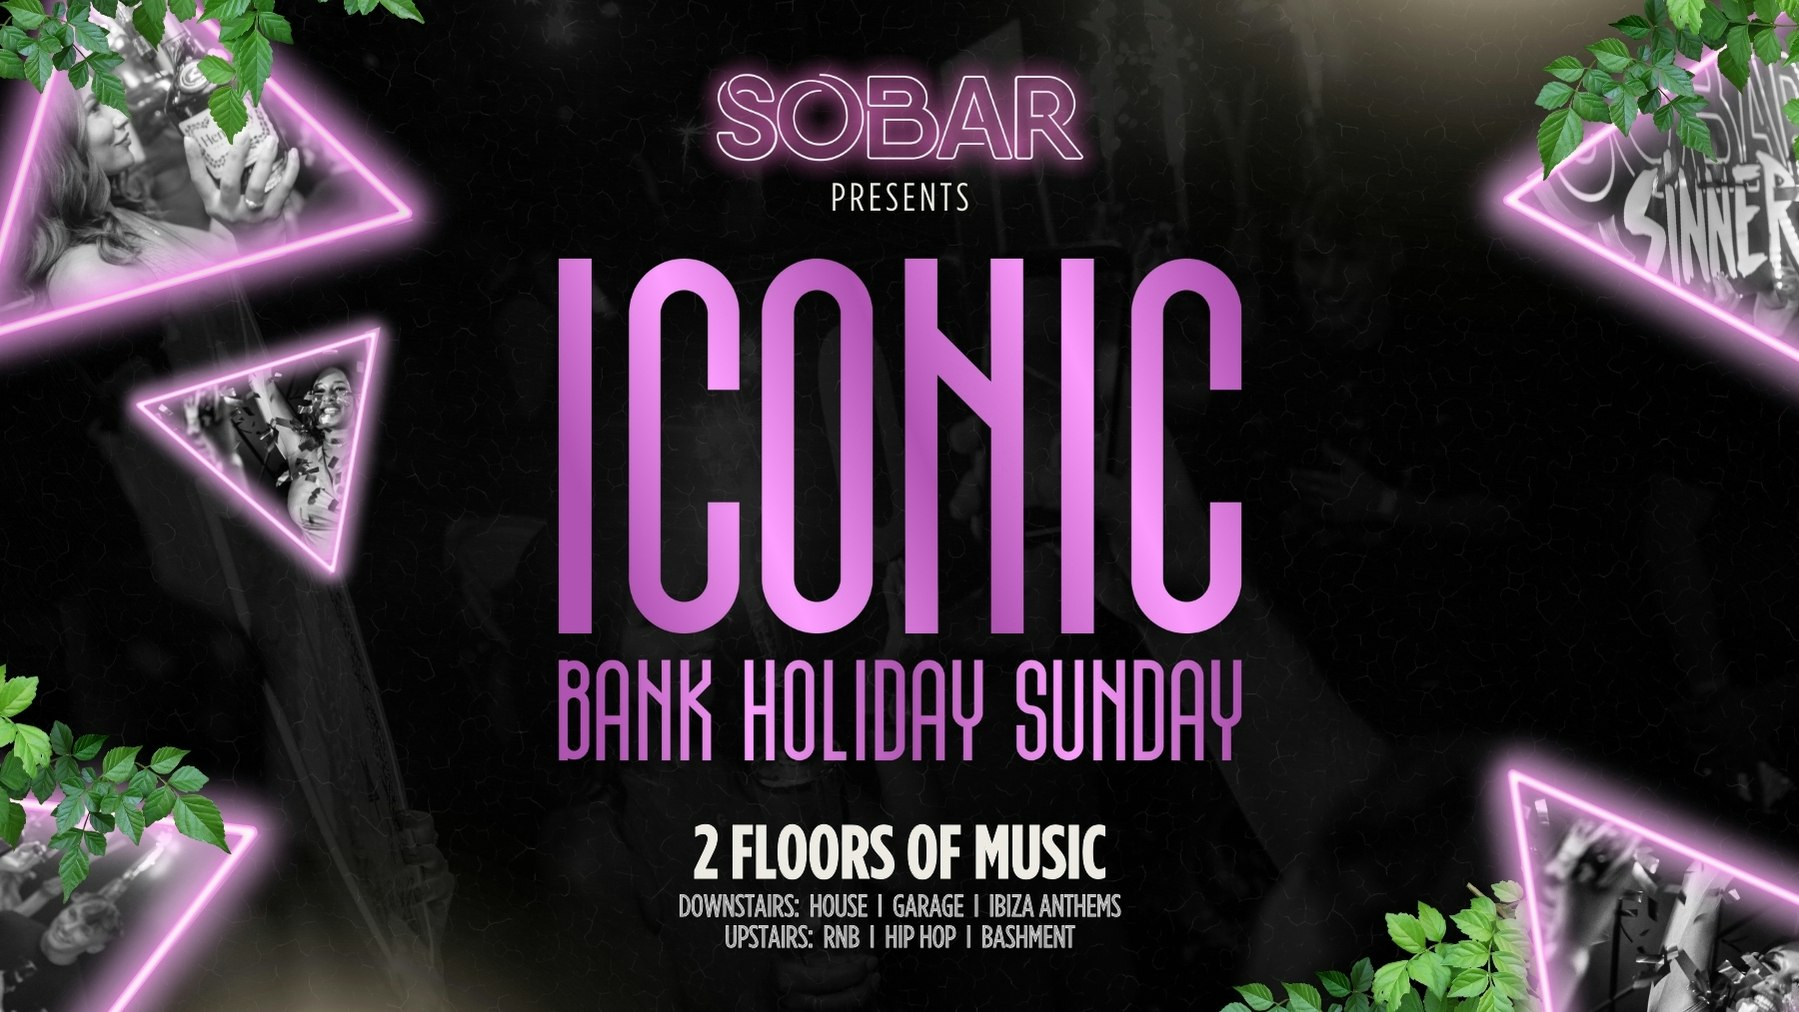 SOBAR Presents “ICONIC” May Bank Holiday Sunday 05/05